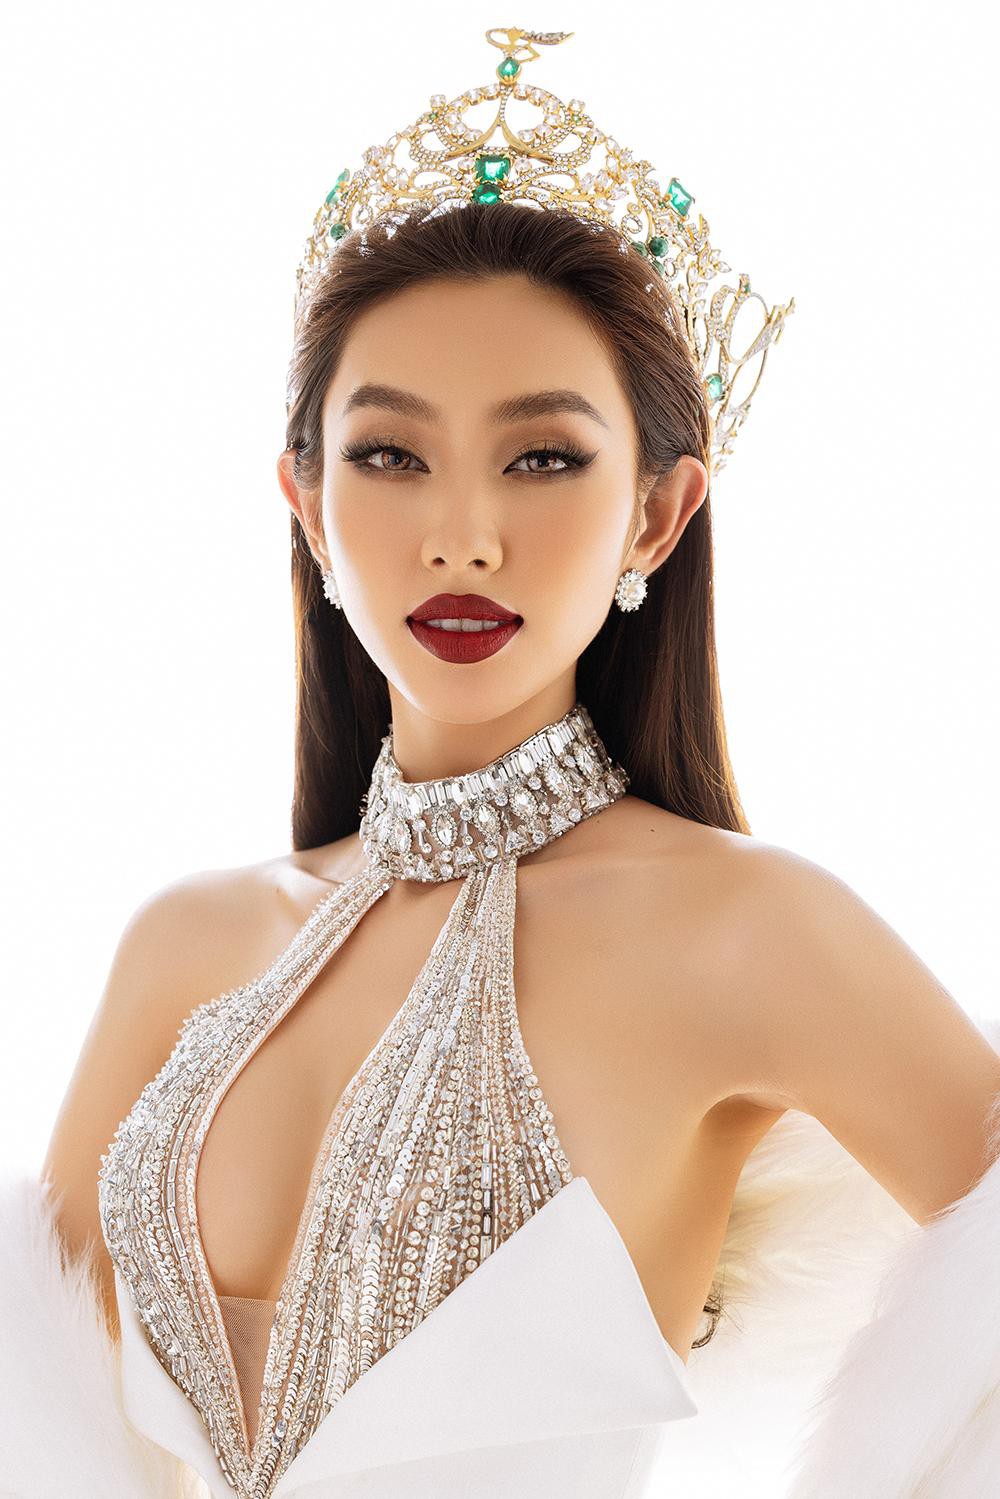 Thuỳ Tiên diện thiết kế khoét vòng 1 nóng bỏng trong bộ ảnh kỷ niệm 6 tháng đăng quang Miss Grand - Ảnh 2.